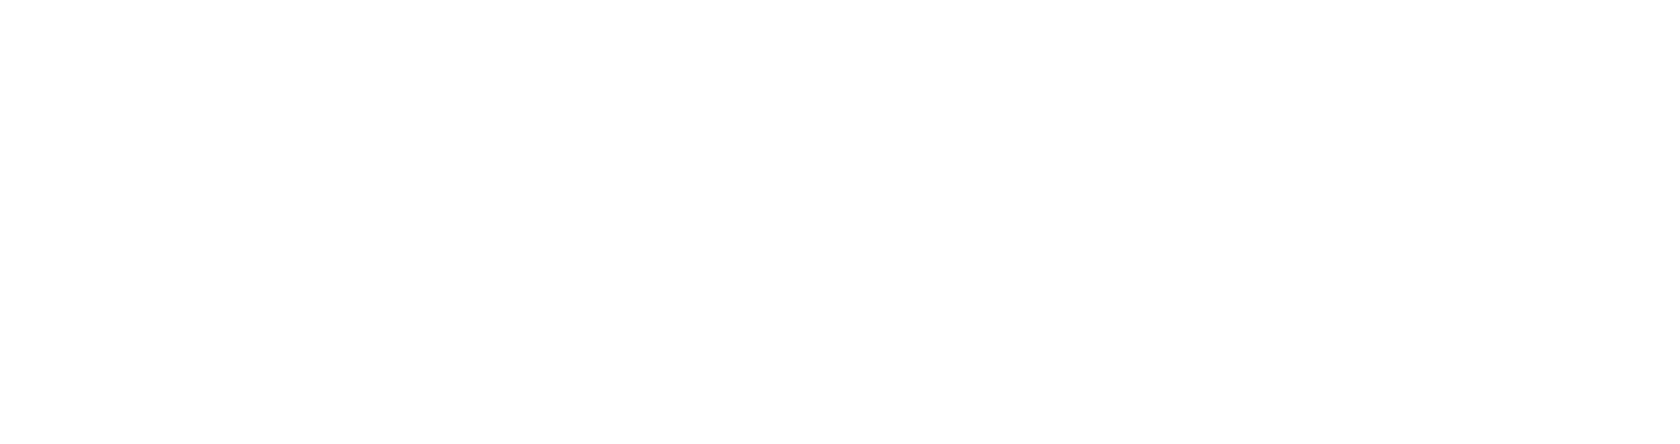 Варианты логотипа кофейни Benesco